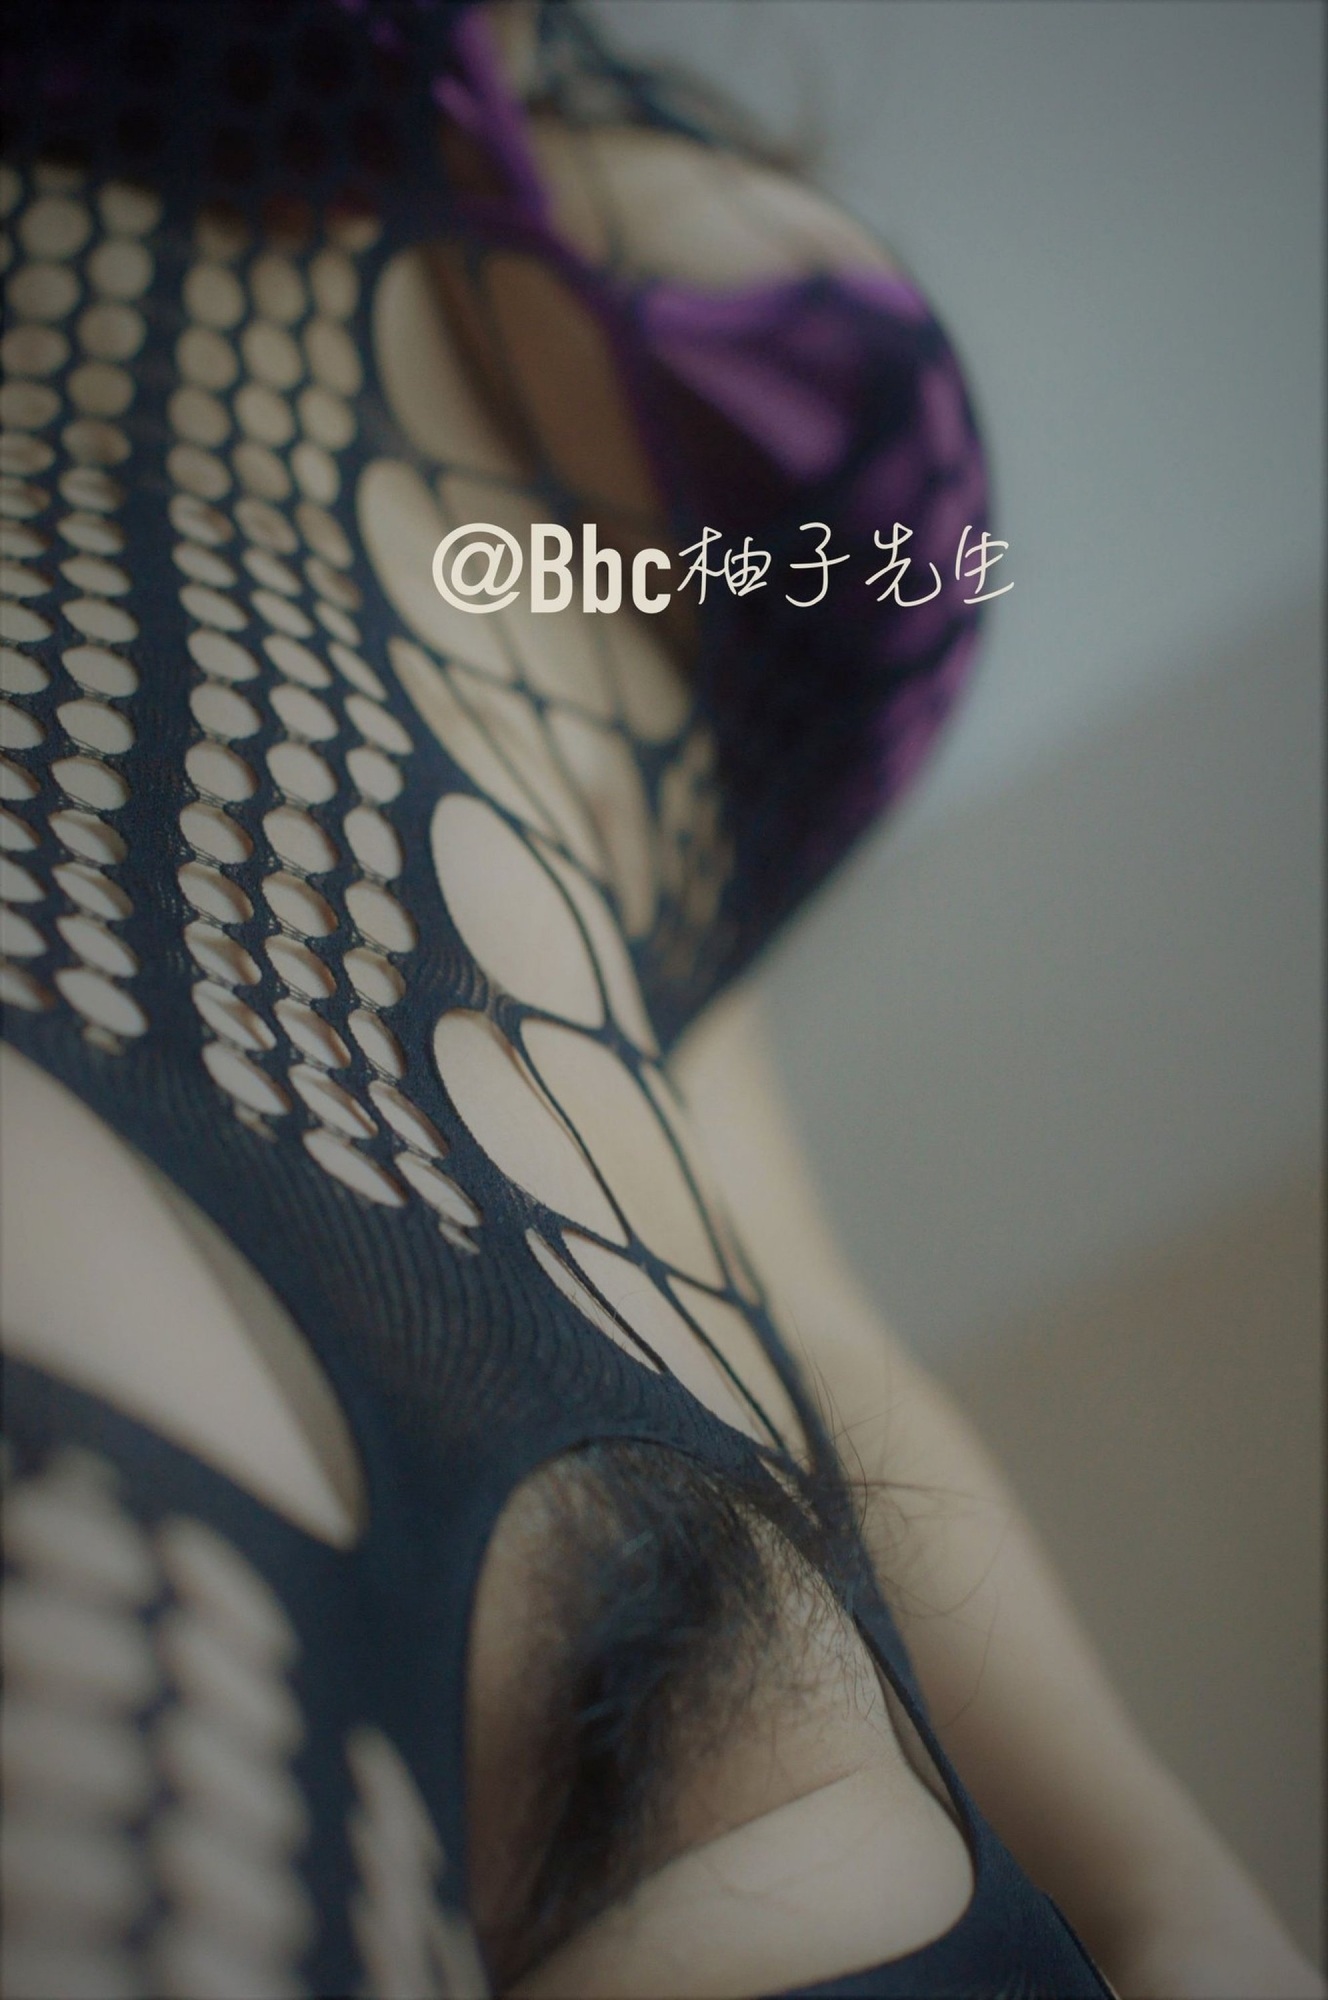 [攝影師柚子先生] @Bbc柚子先生 攝影師柚子先生 Vol.01